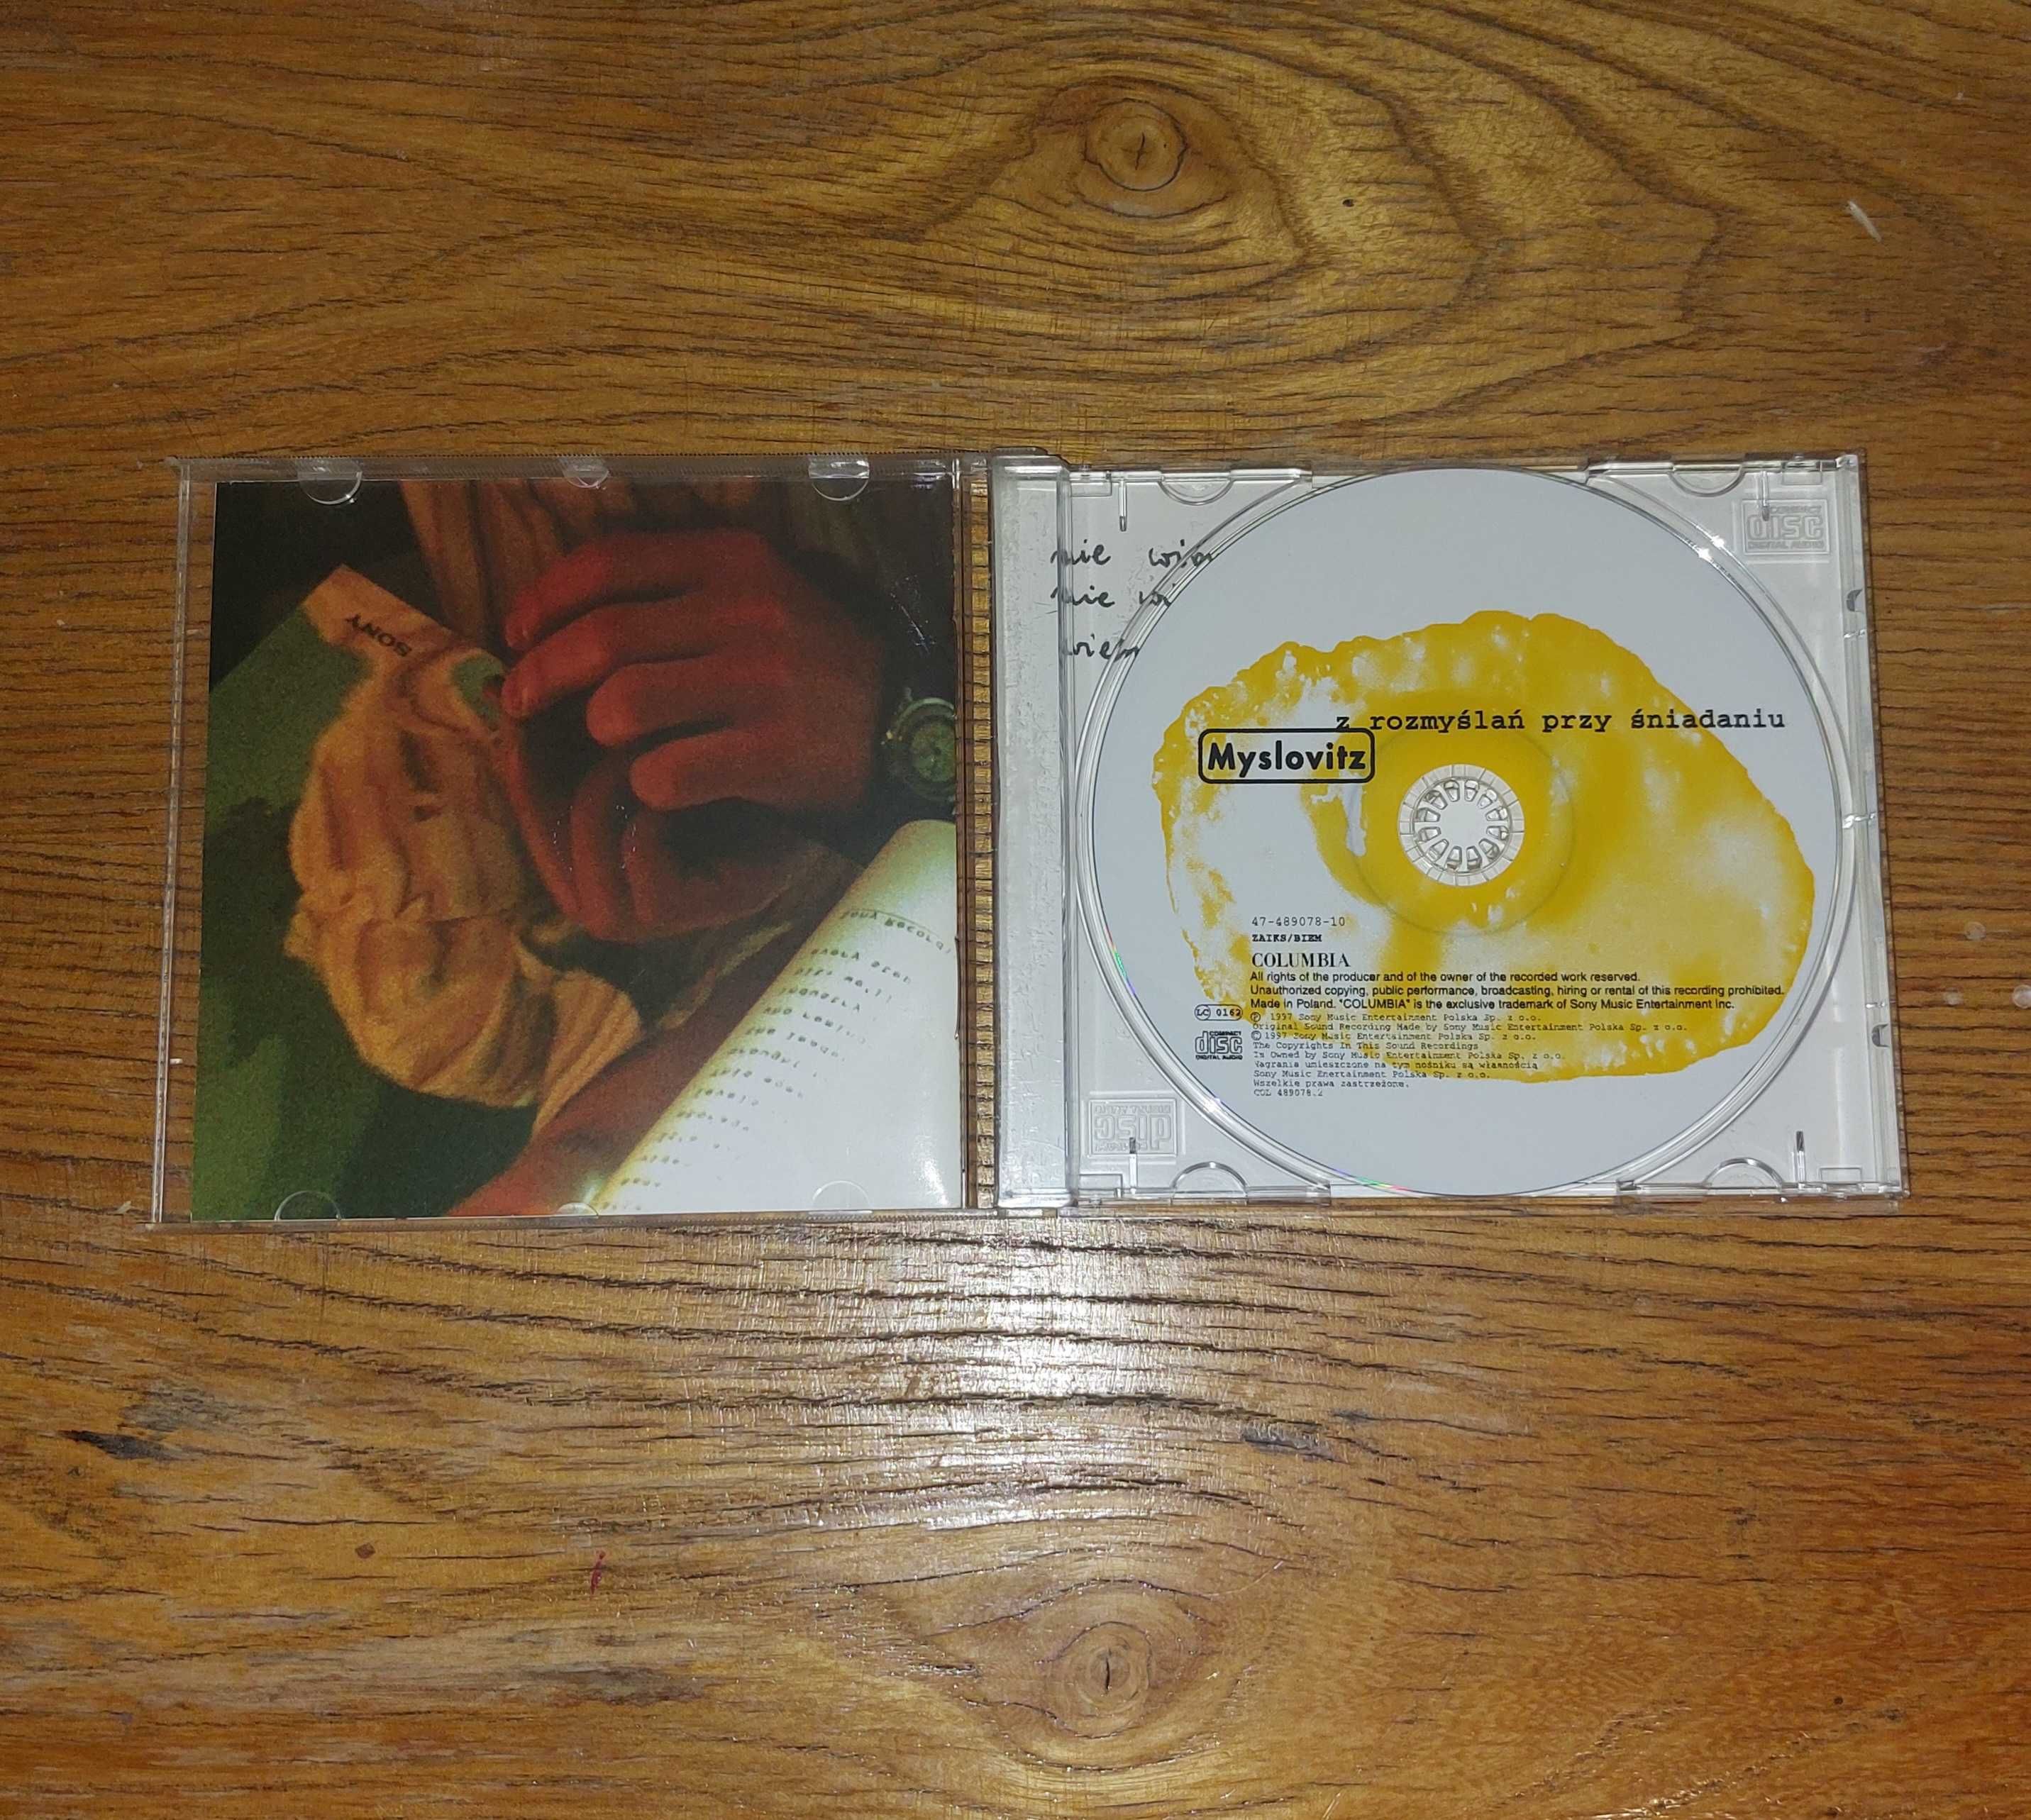 Myslovitz Z rozmyślań przy śniadaniu- płyta CD 1997